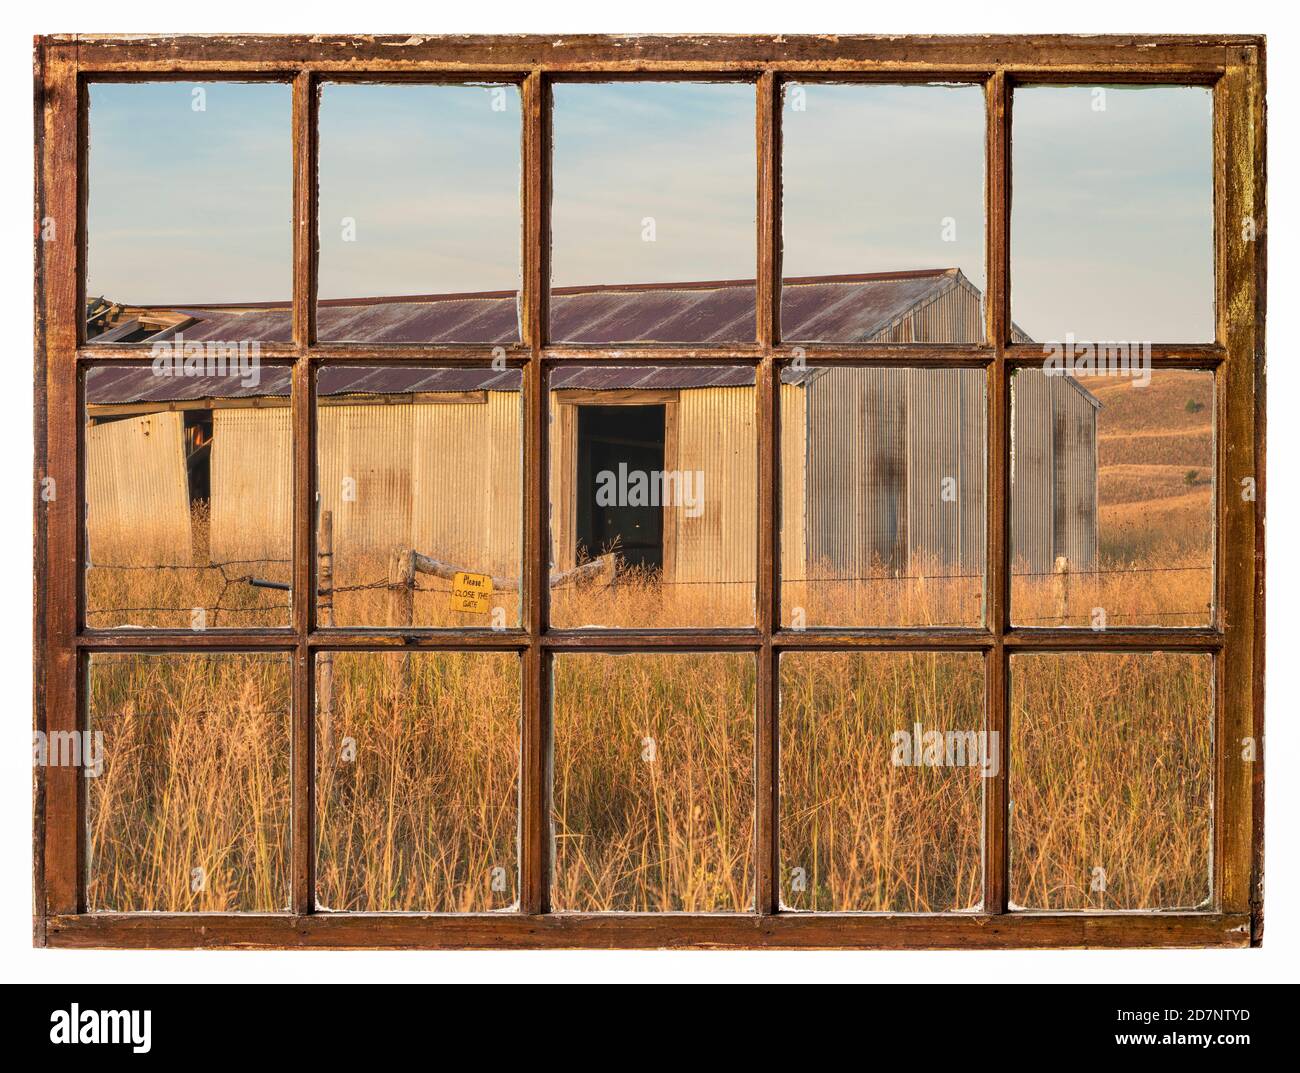 Ancienne grange en métal dans les dunes du Nebraska comme vu d'un fenêtre à guillotine vintage Banque D'Images